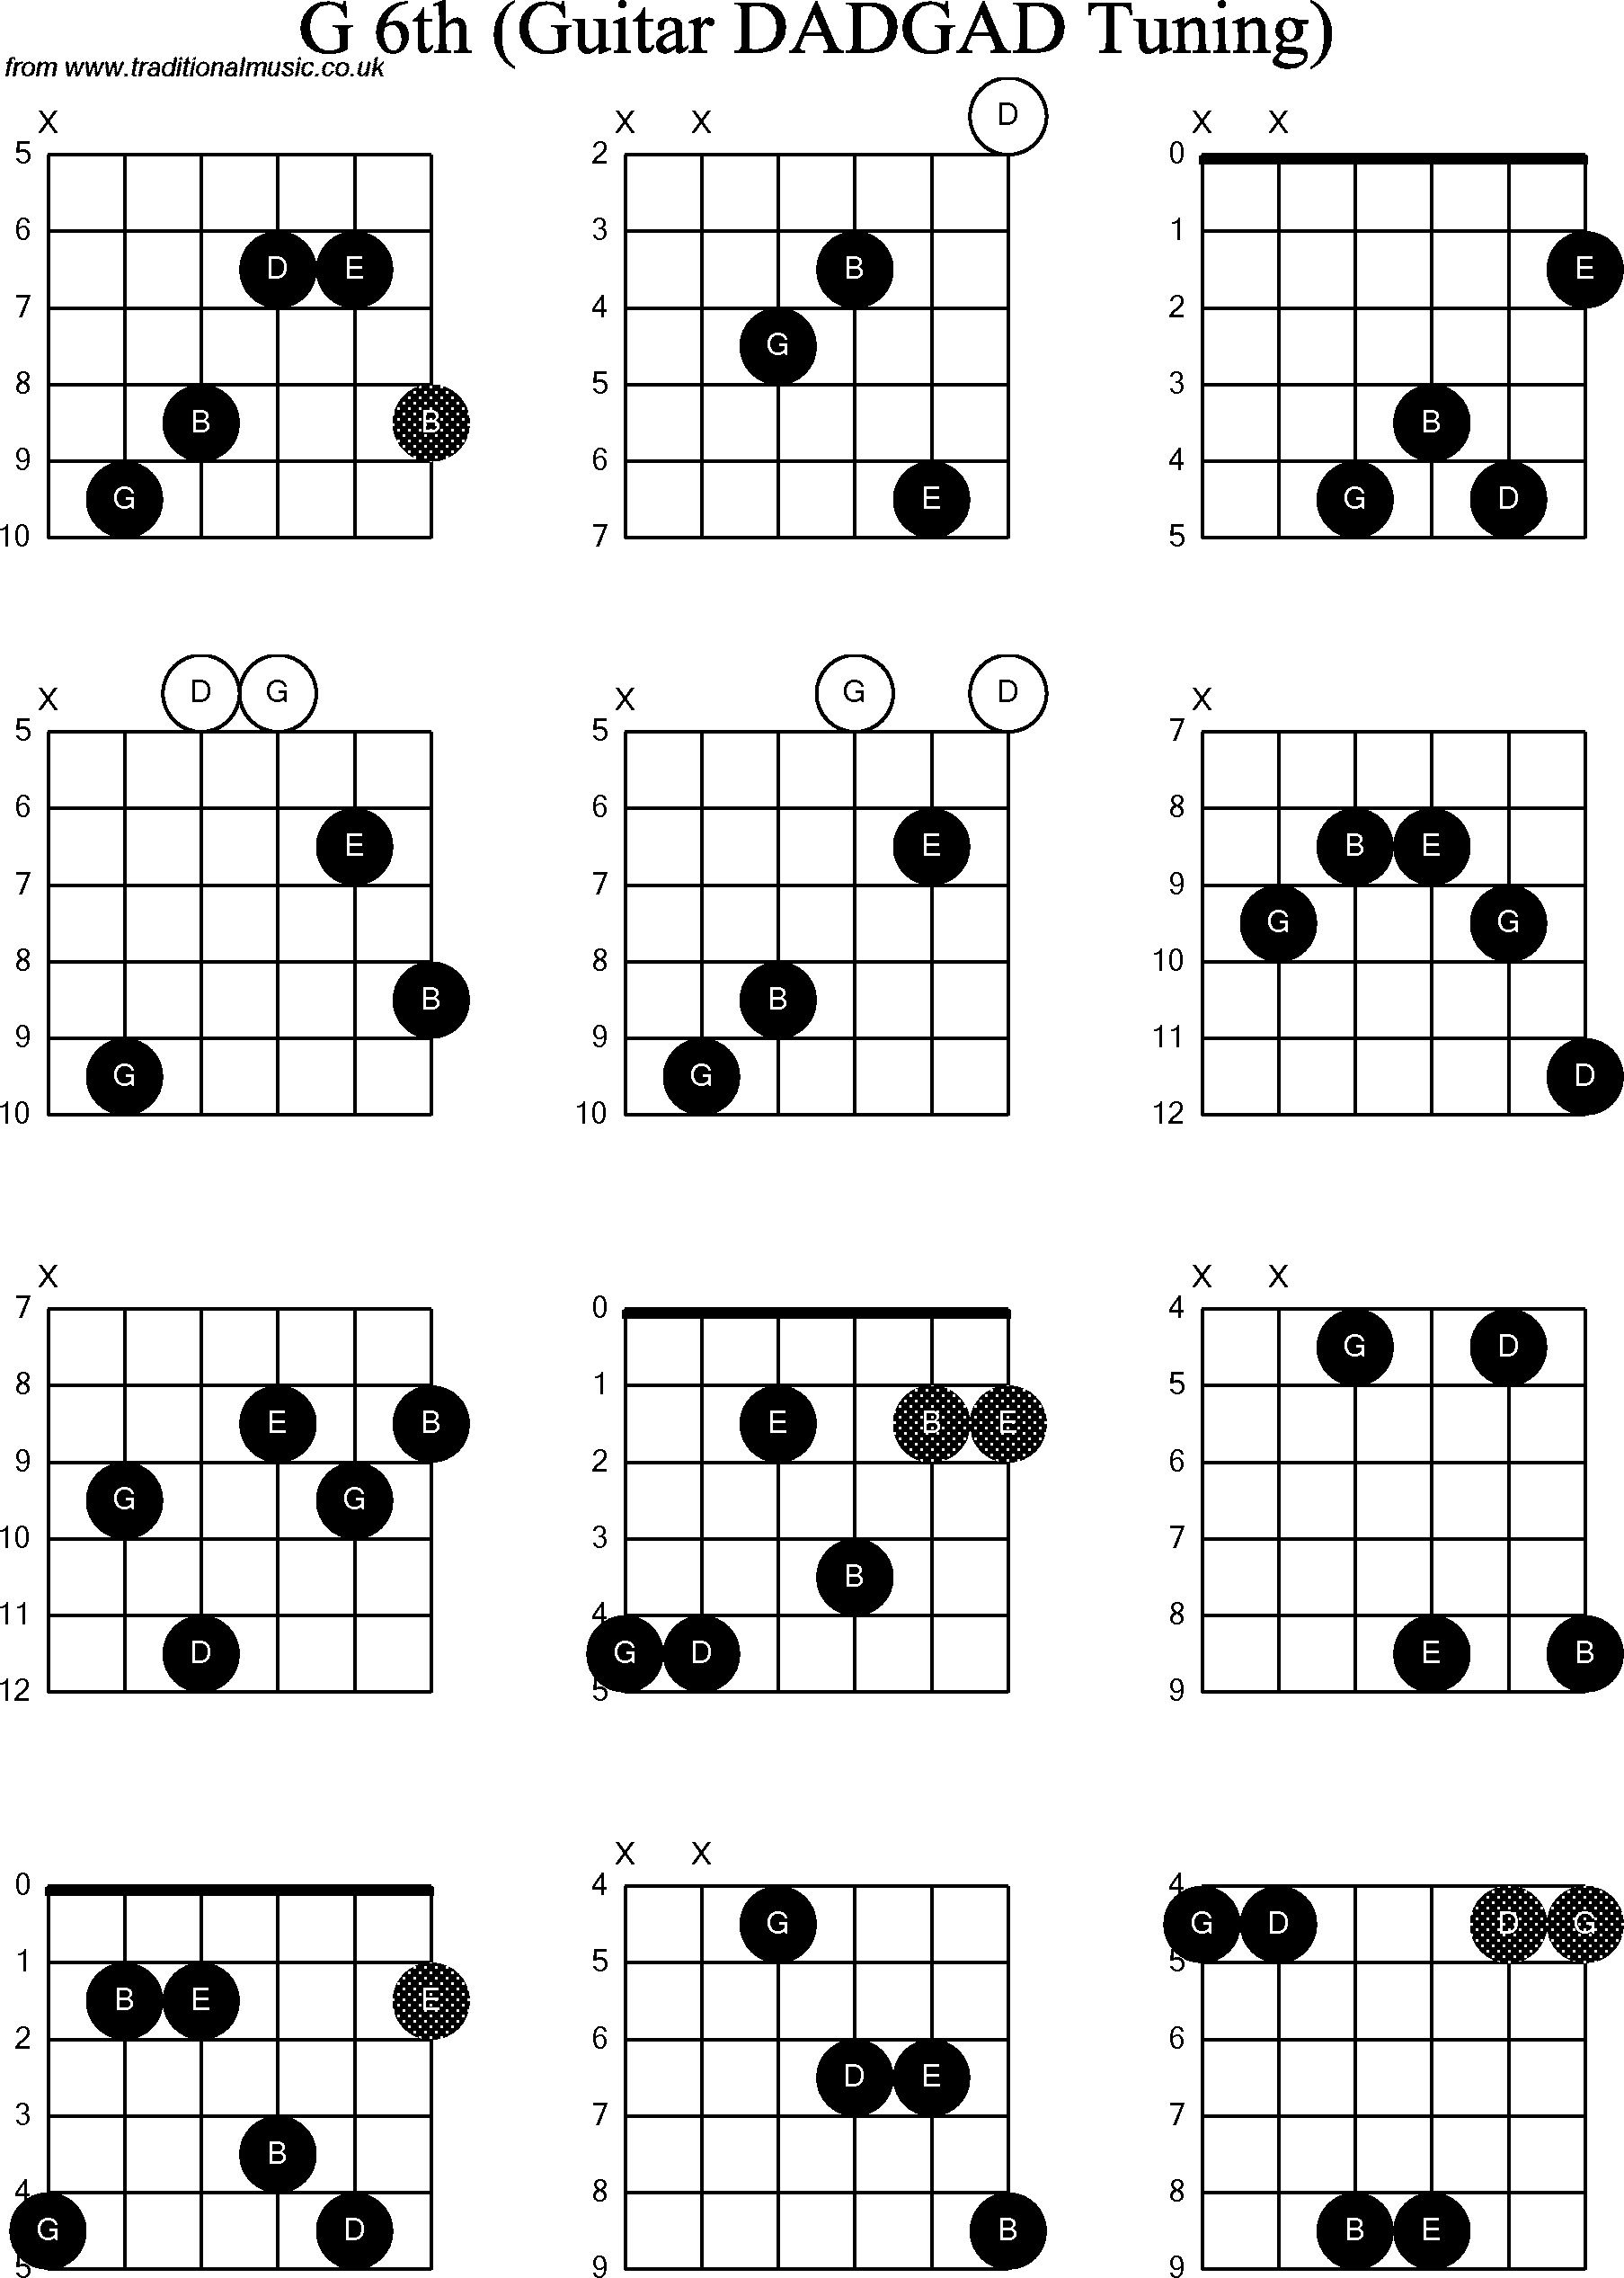 Chord Diagrams for D Modal Guitar(DADGAD) G6th.